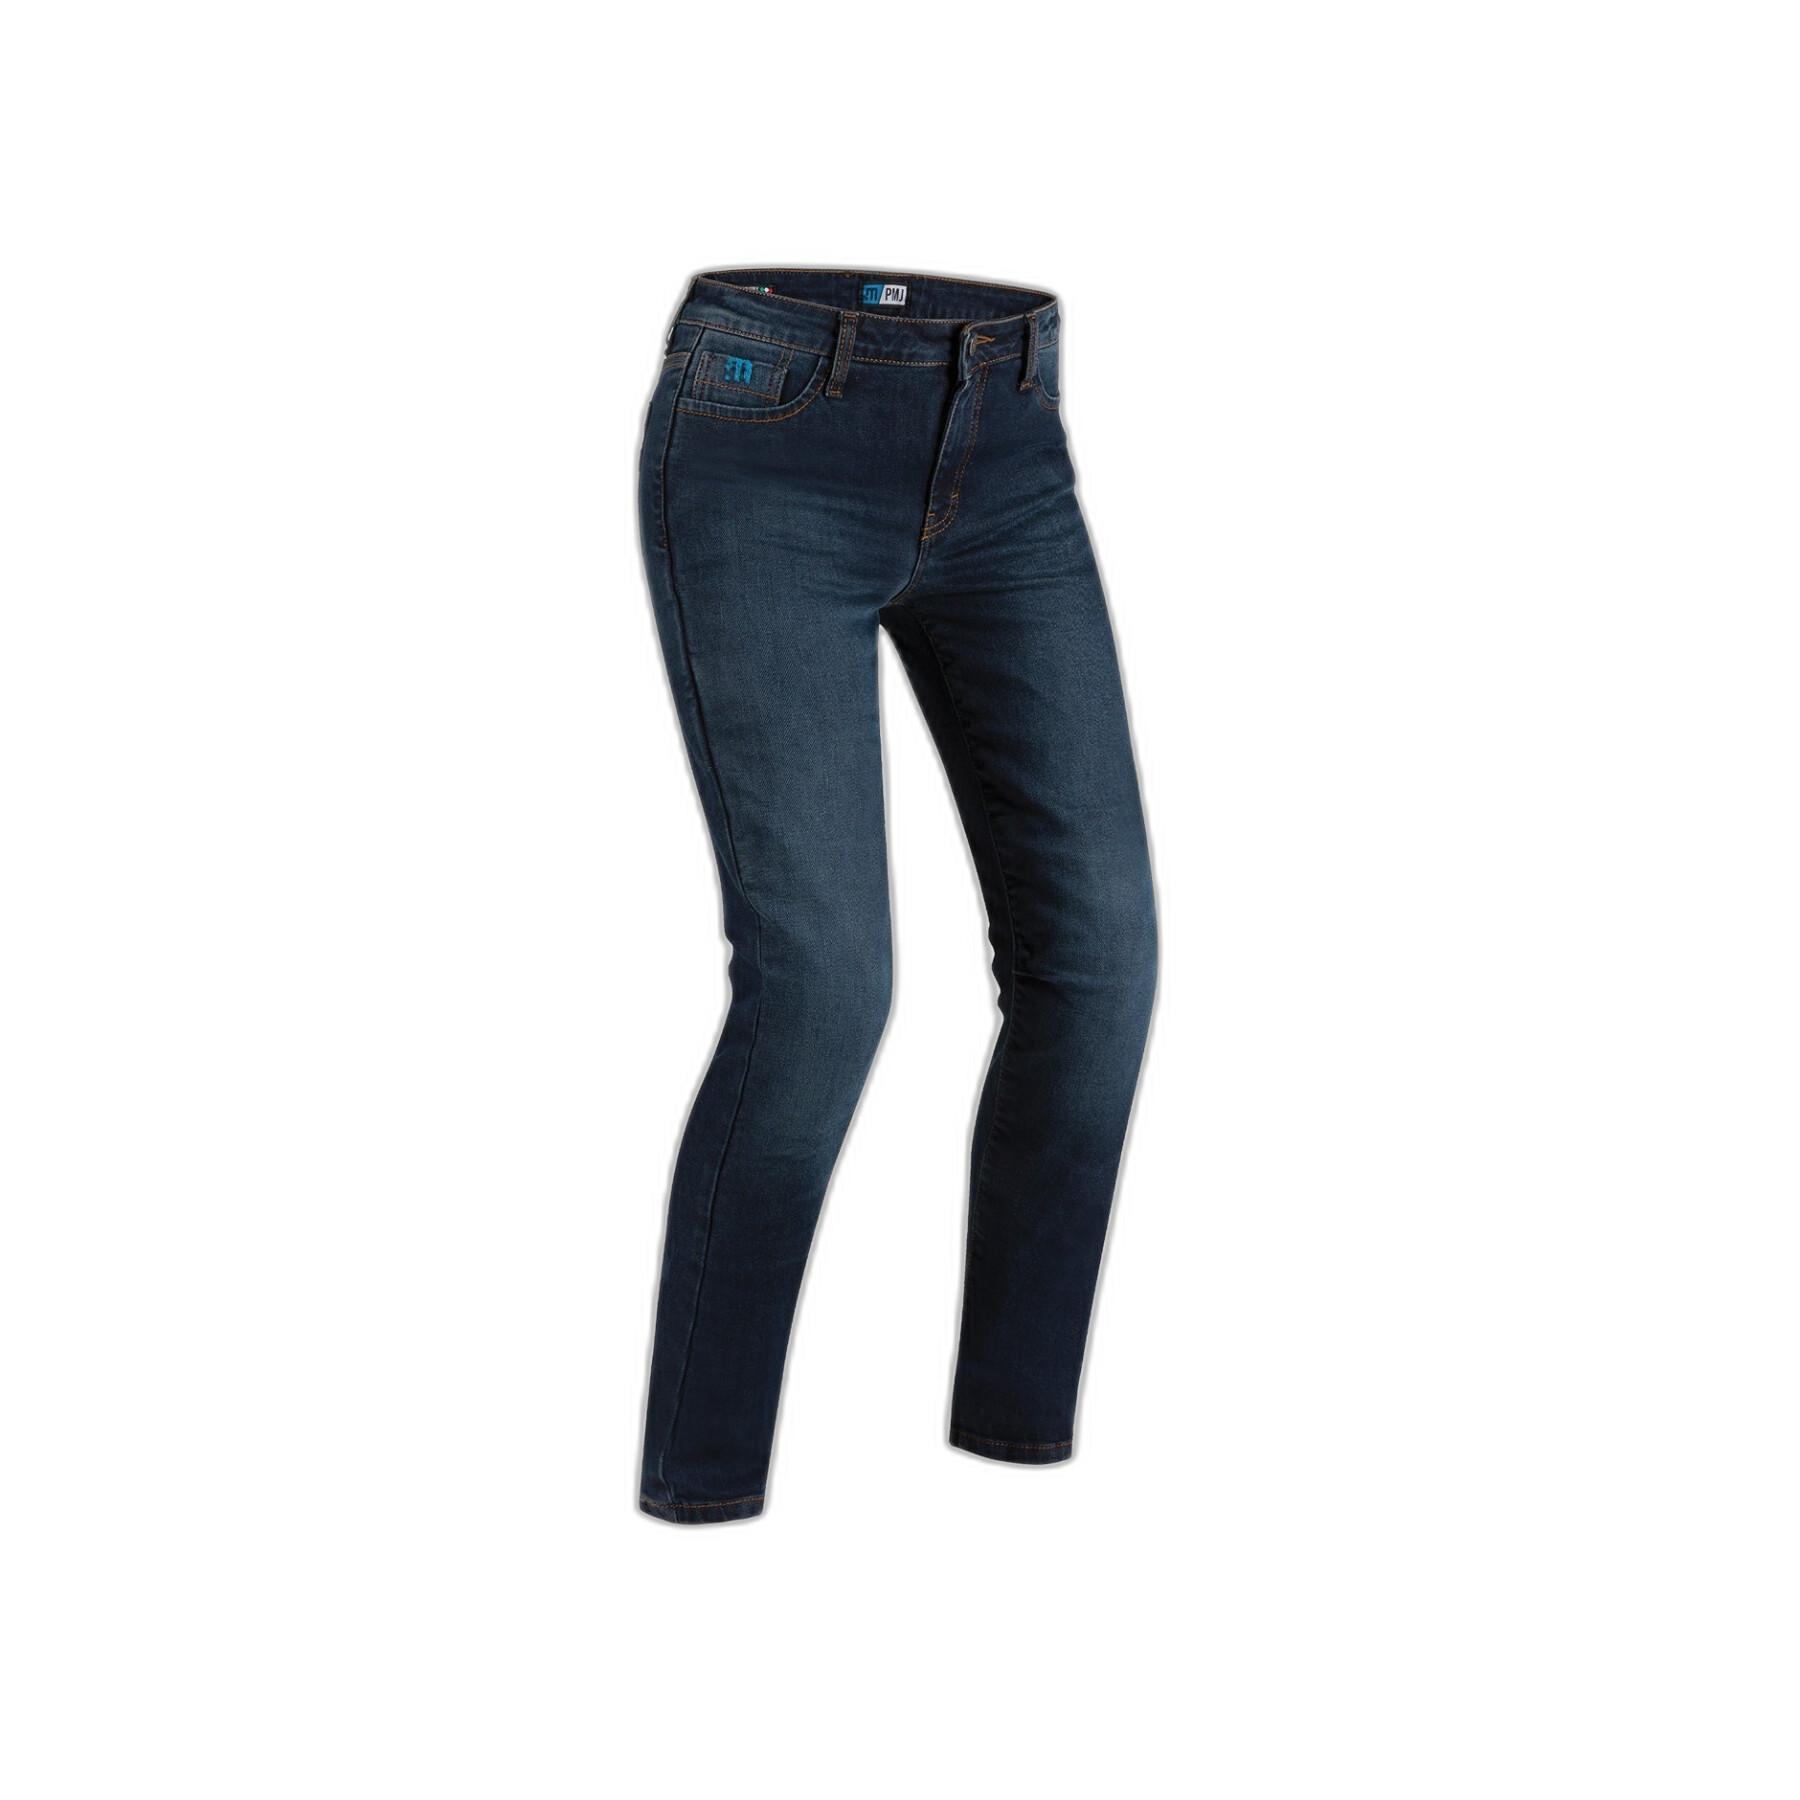 Motorrad-Jeans für Frauen PMJ Caferacer